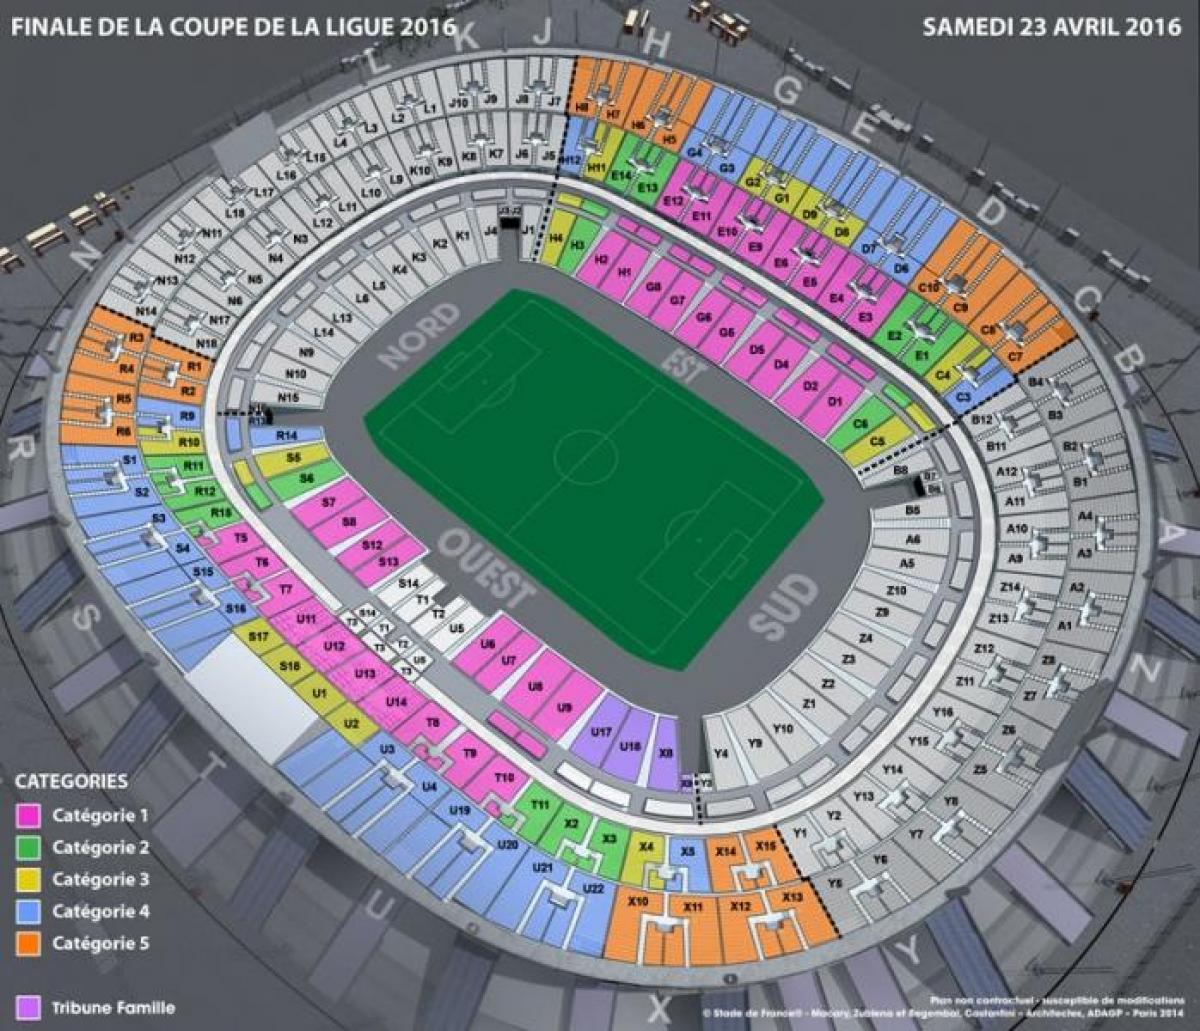 Kaart van het Stade de France Voetbal